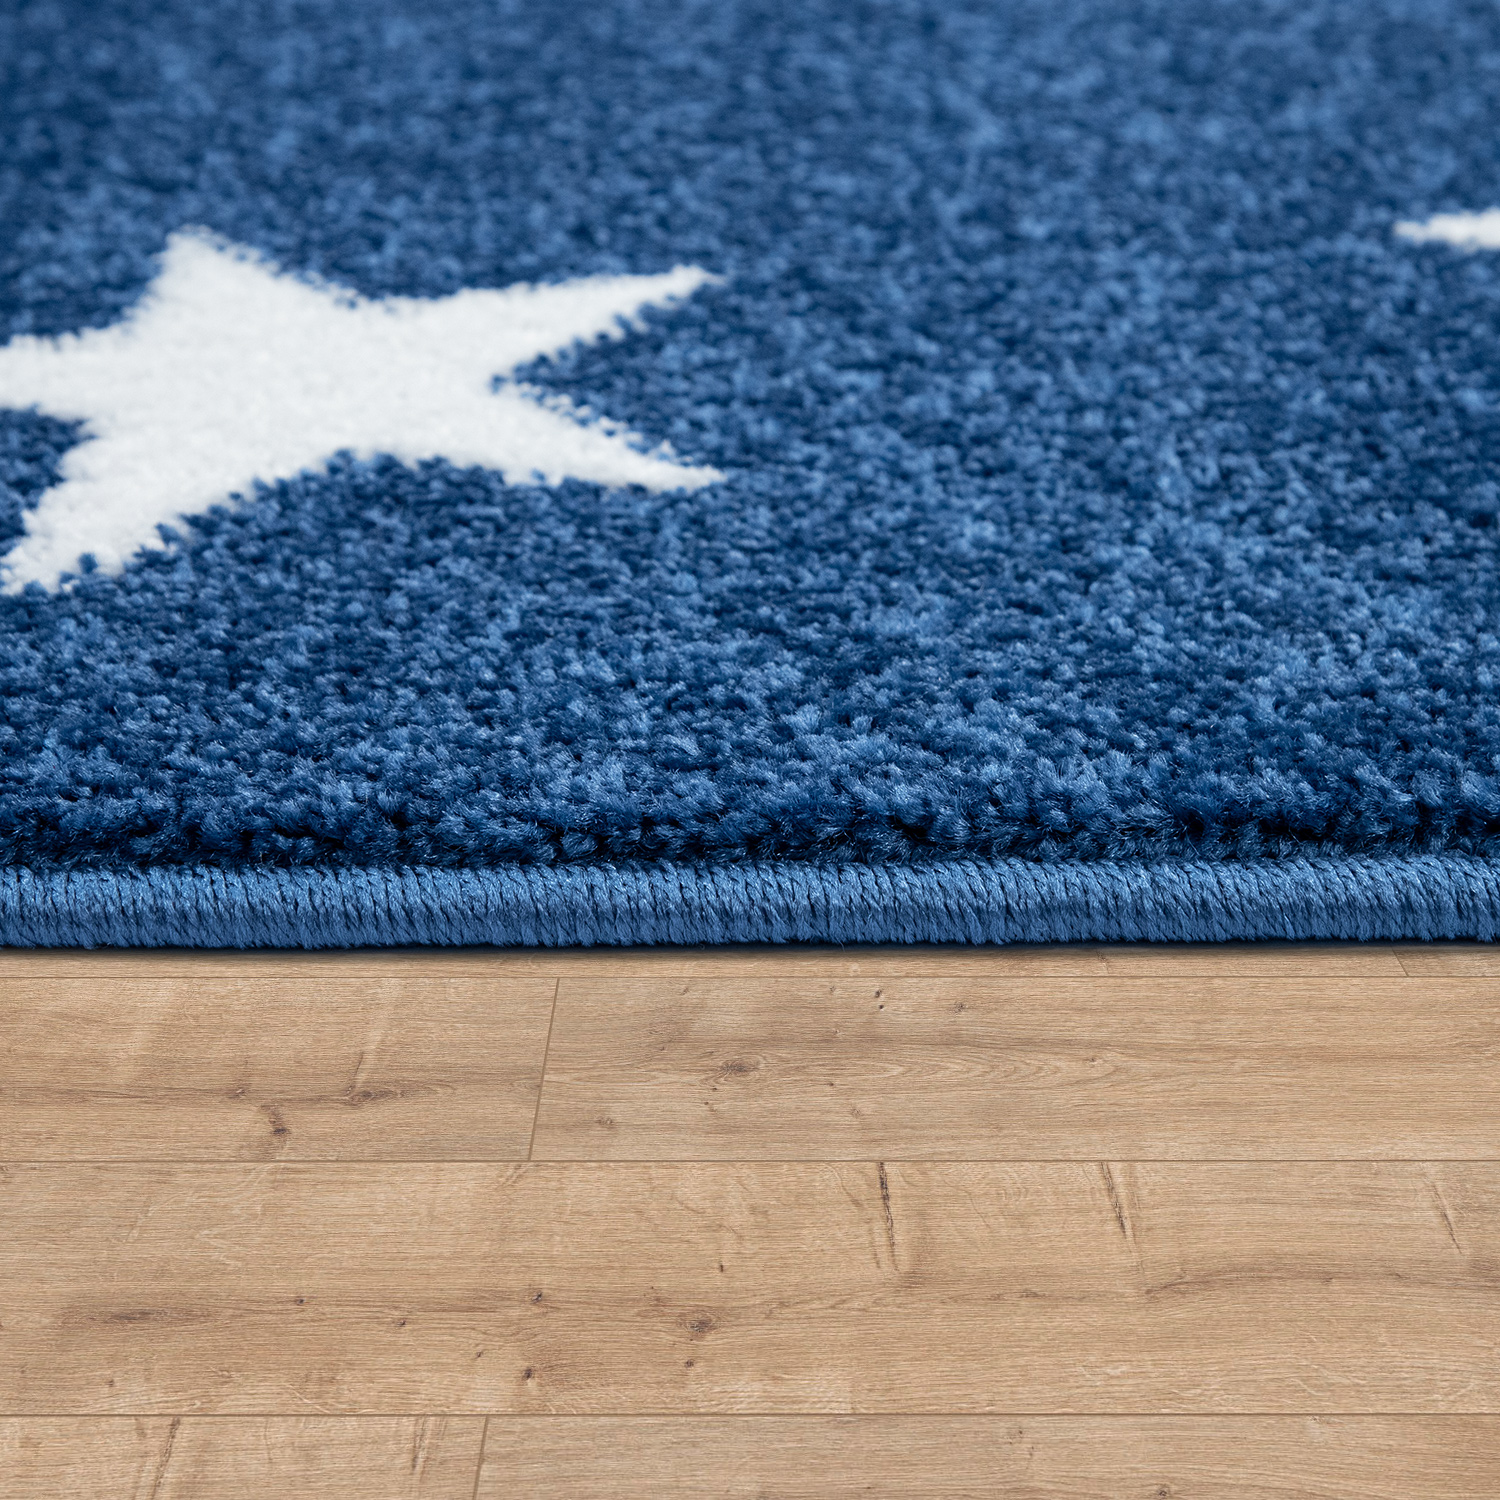 Kinder-Teppich Kinderzimmer Sternen-Design Blau 